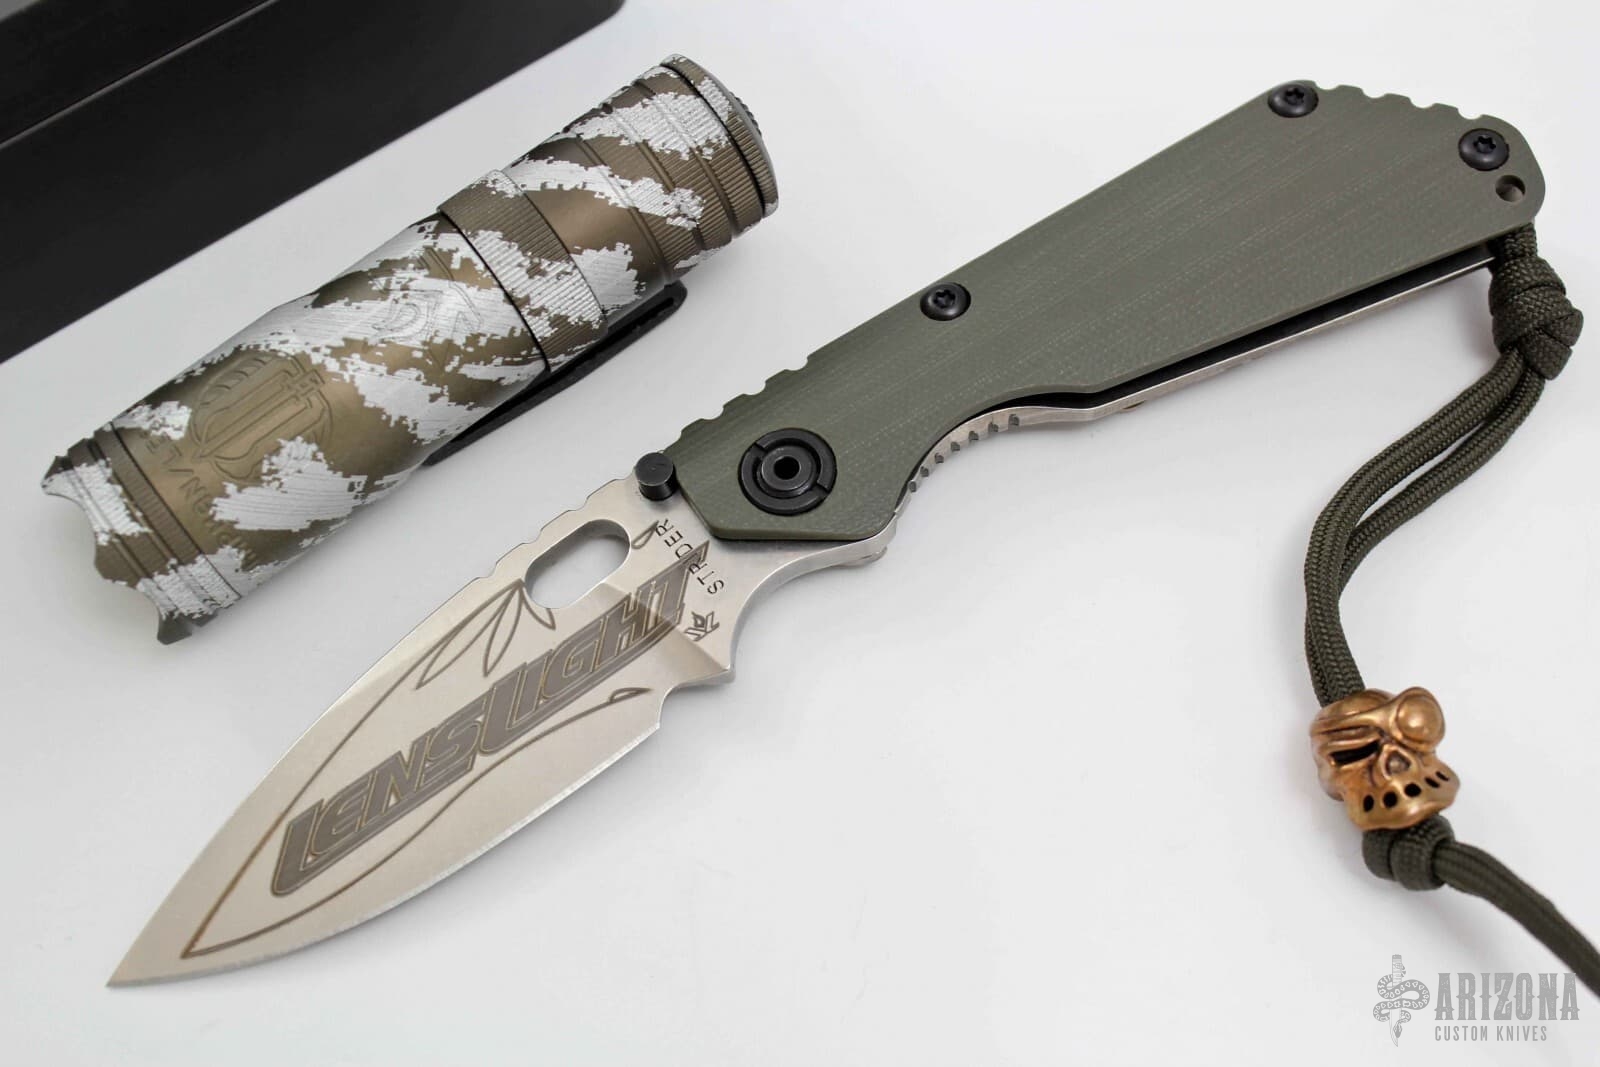 Lenslight/Strider/Starlingear Set | Arizona Custom Knives